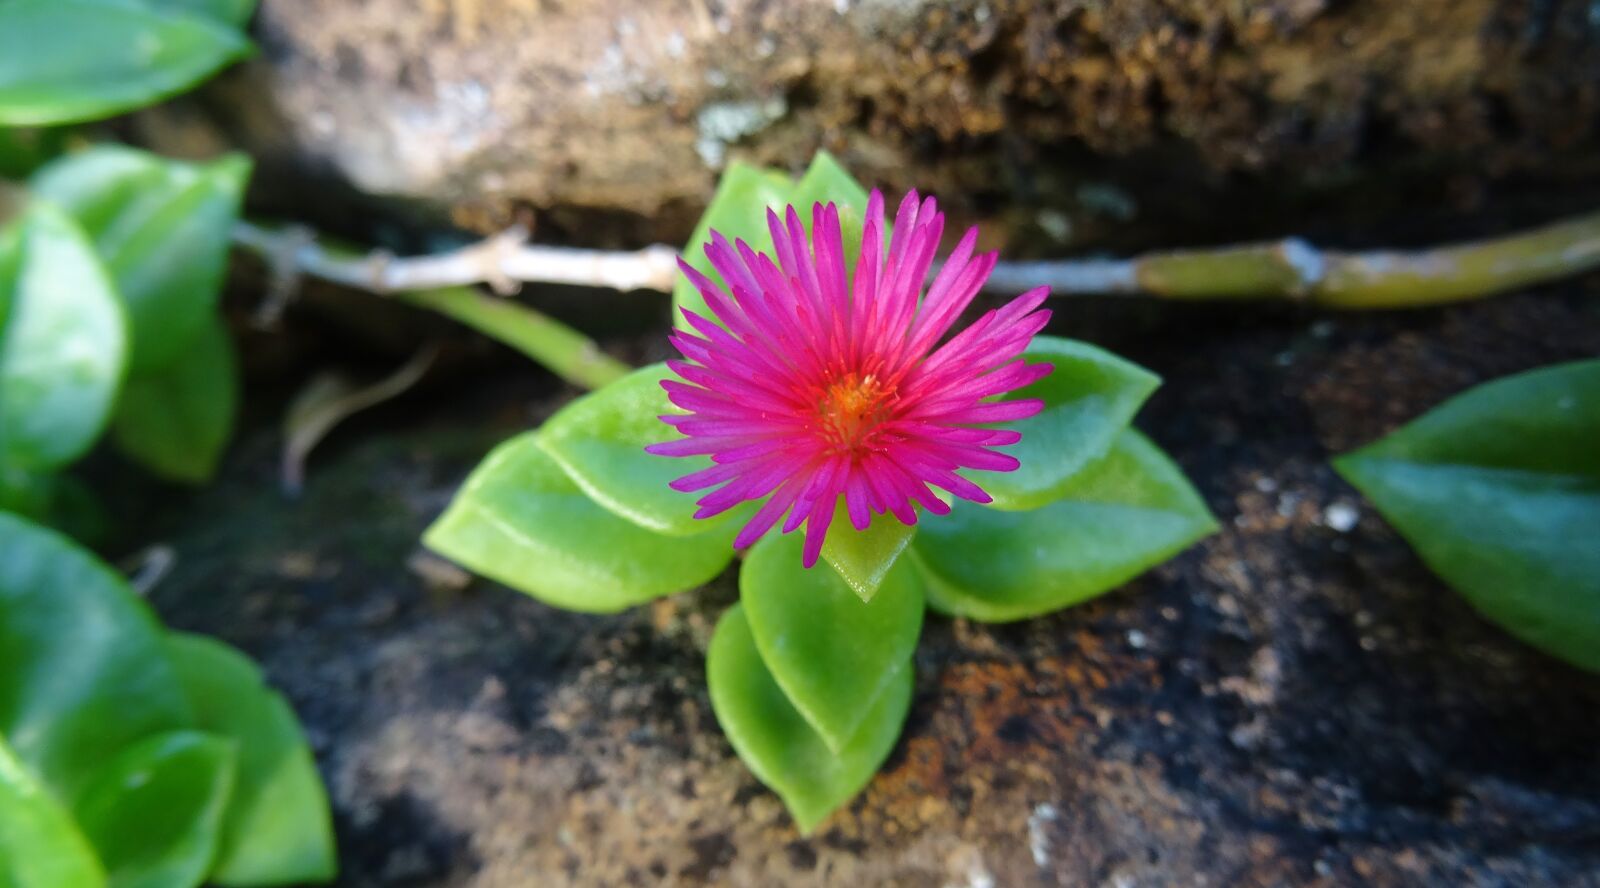 Sony Cyber-shot DSC-HX50V sample photo. Nature, flora, flower photography